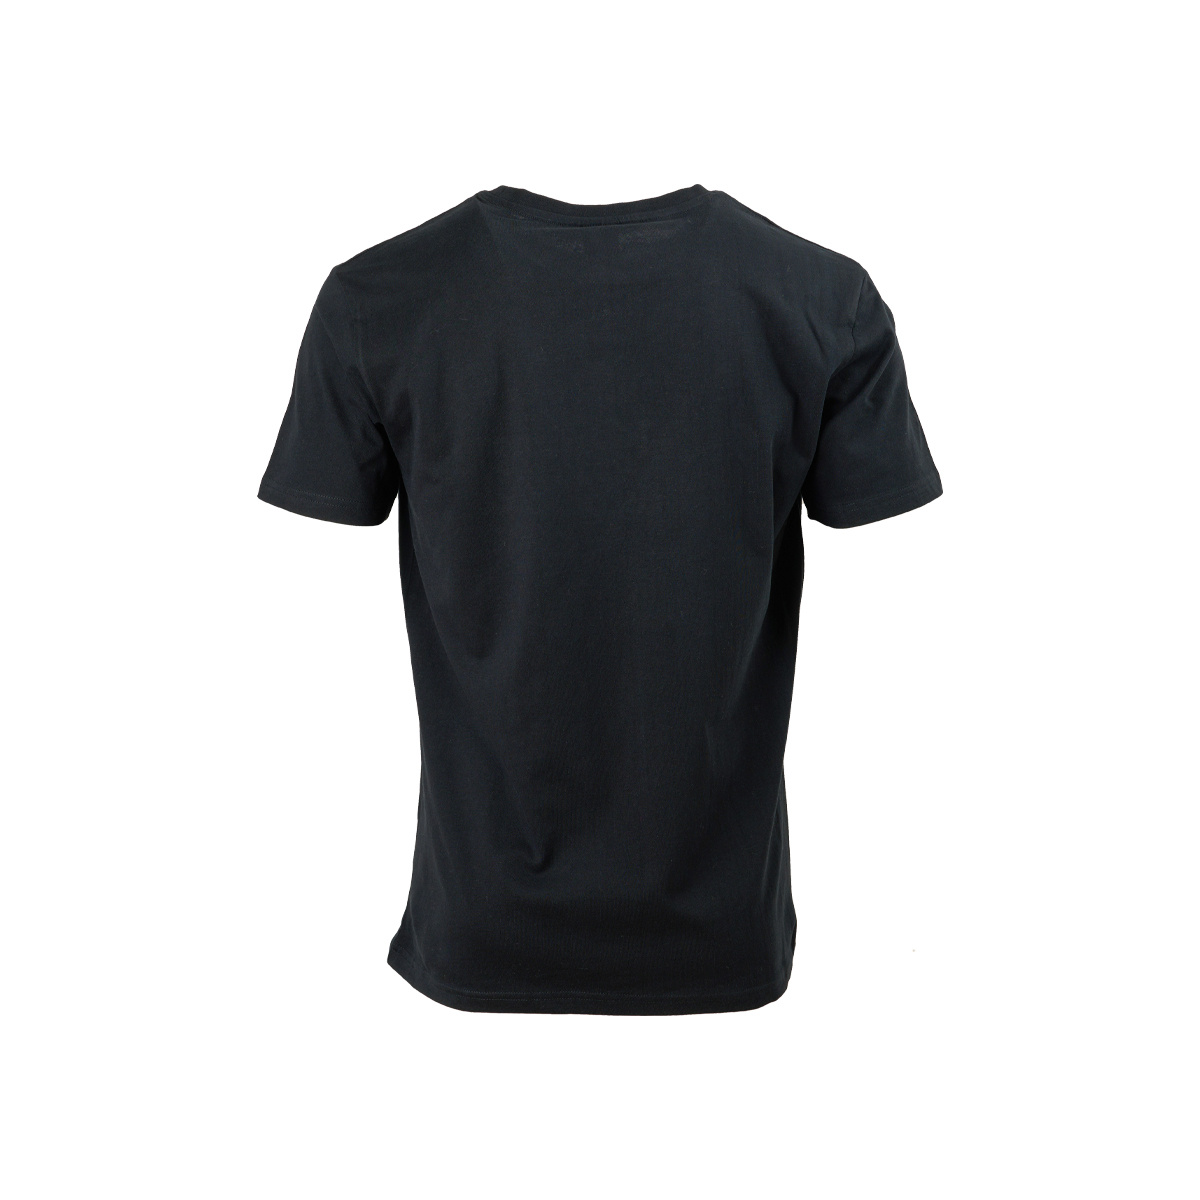 T-shirt zwart - Royal Antwerp football club-5